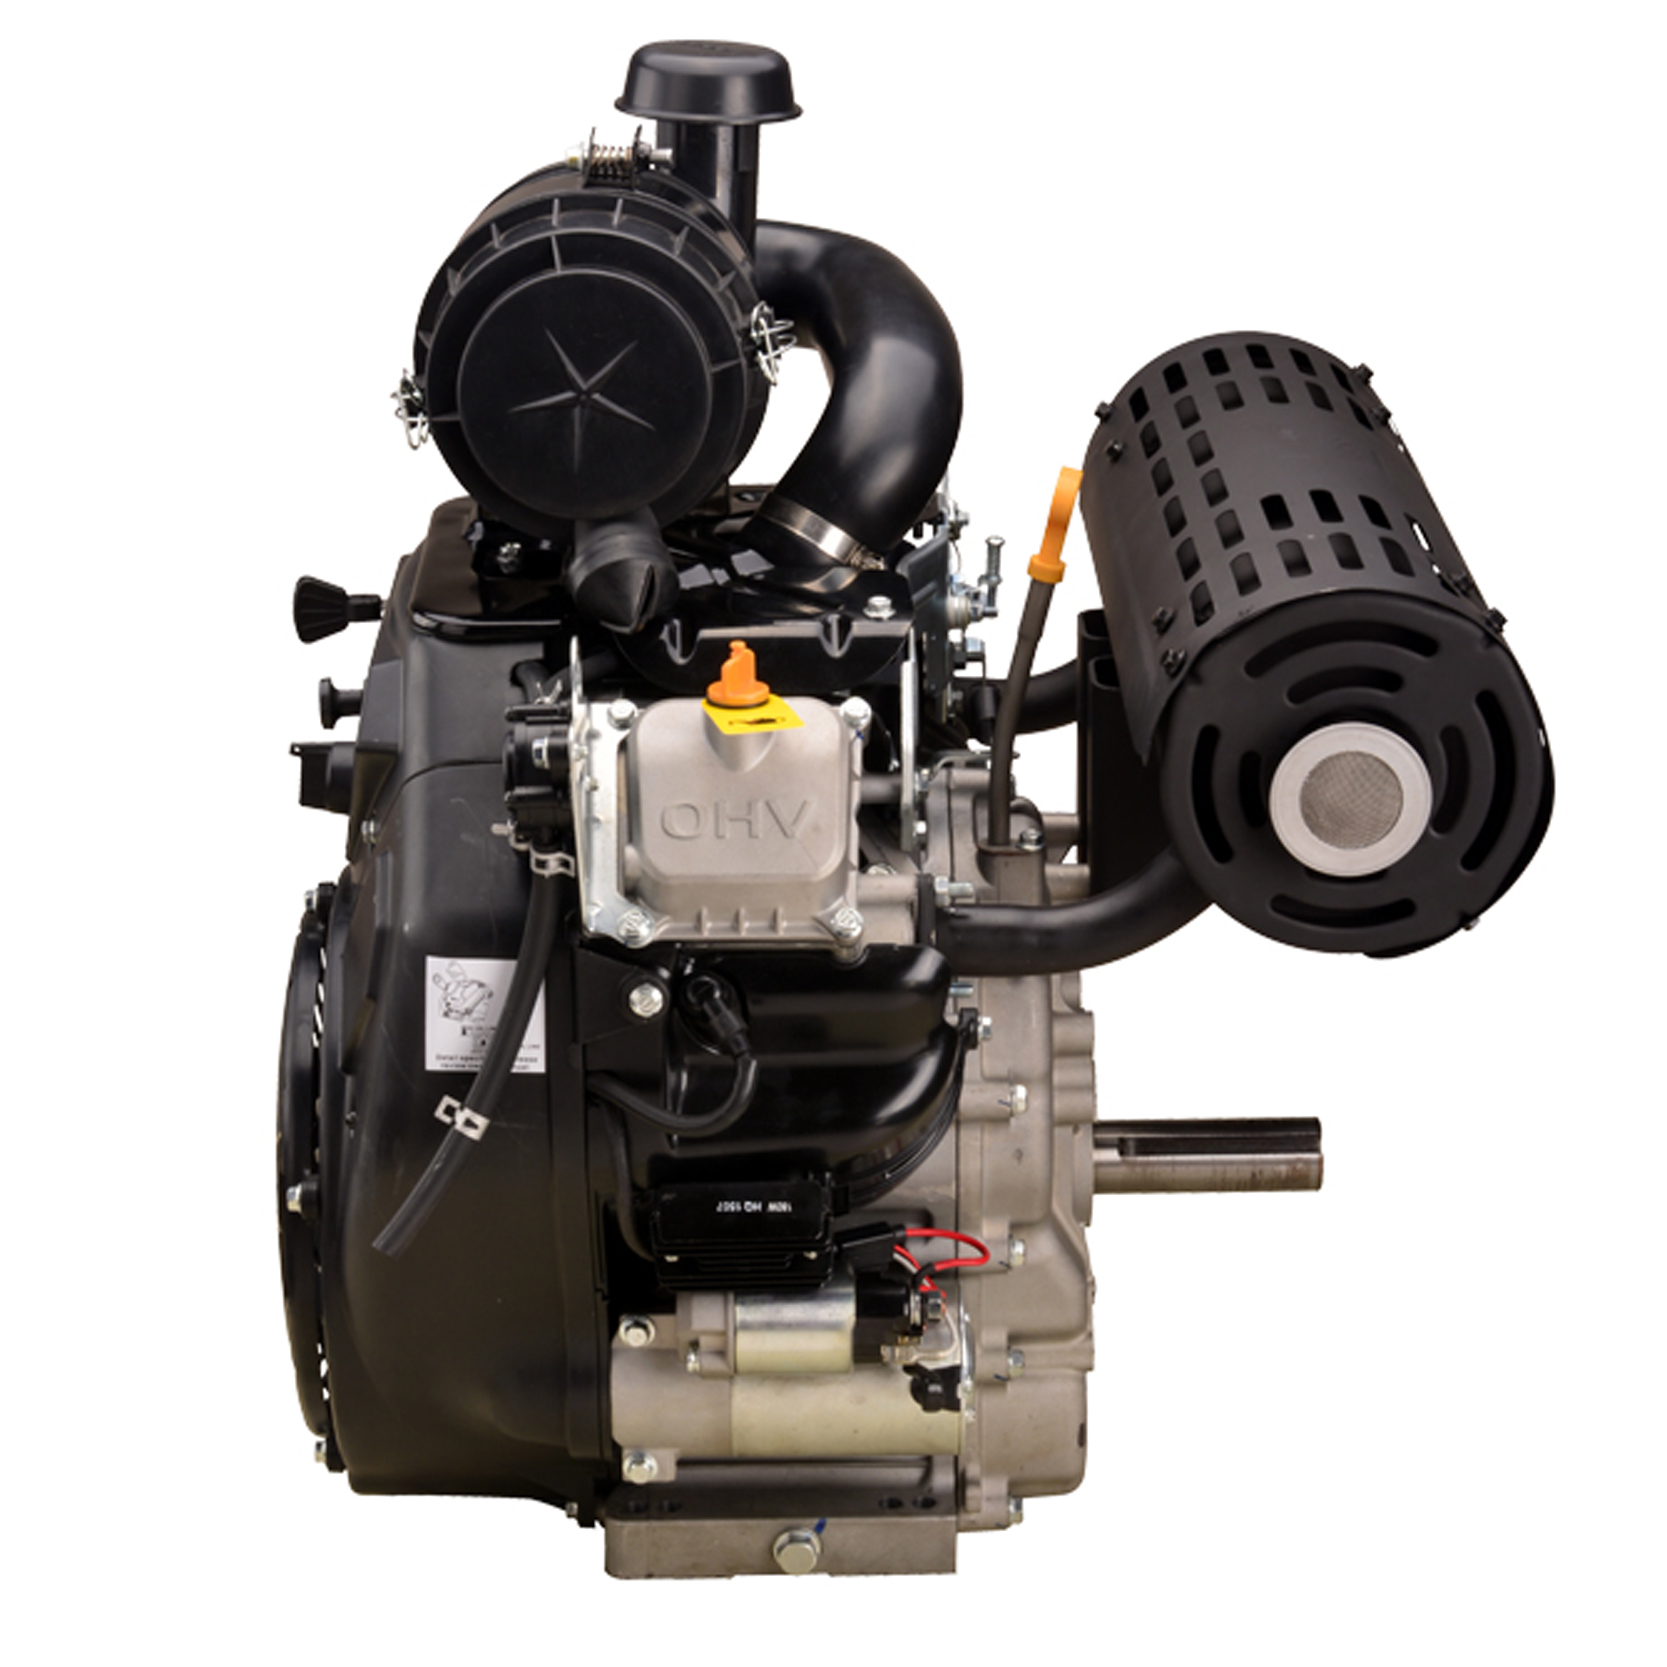 Motor a gasolina de eixo horizontal duplo 999CC 35HP V para gerador de lavadora de pressão de grãos sem fim barco com EPA EURO-V 